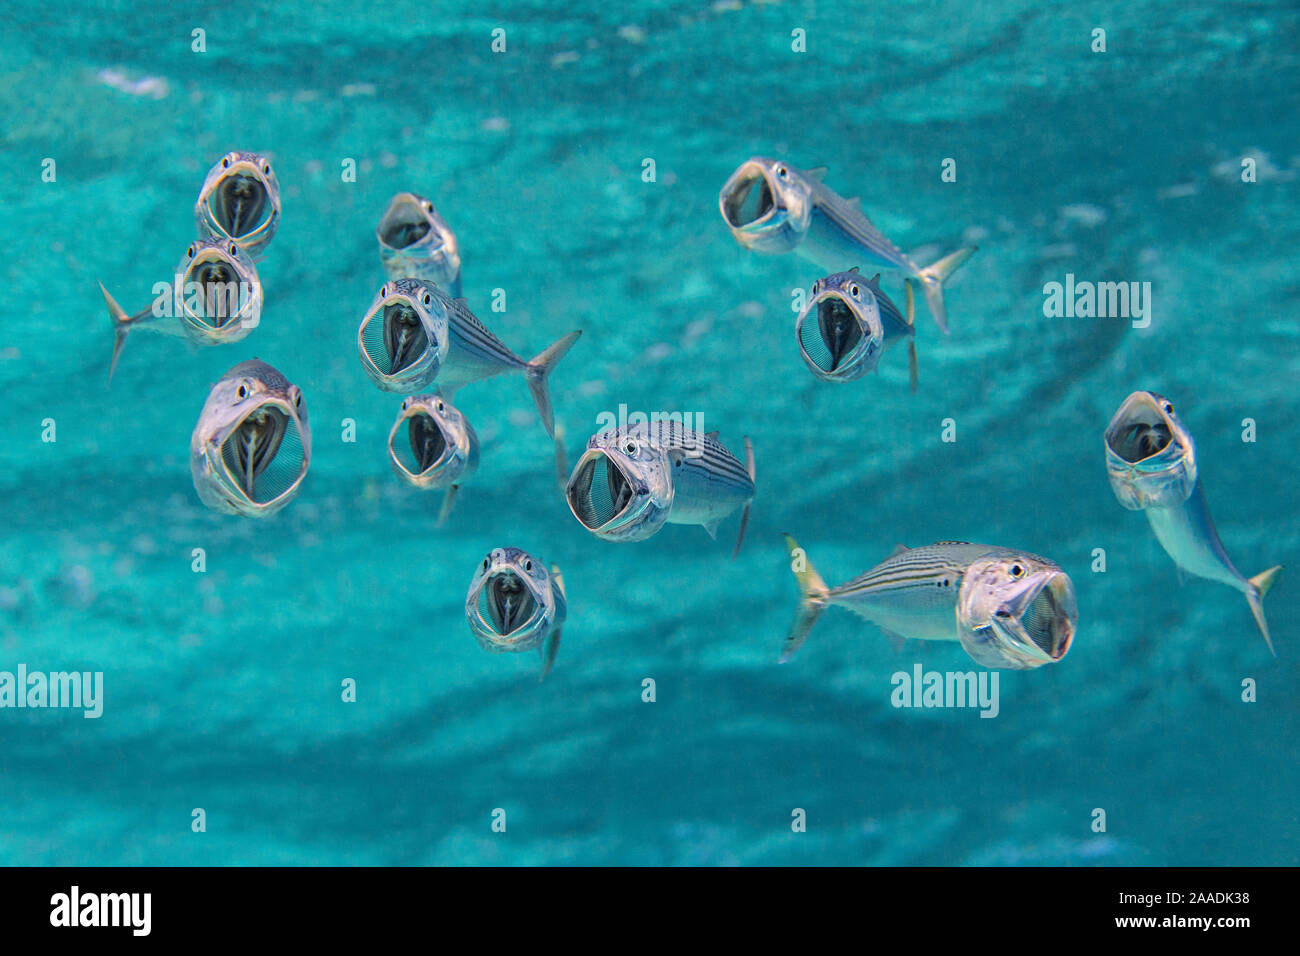 Gestreifte Makrele (Rastrelliger kanagurta) mit Mund offen, als sie durch das Wasser schwimmen, Filterung zoopankton mit ihren Gill rakers. Marsa Shouna, Port Ghalib, Marsa Alam, Ägypten. Rotes Meer Stockfoto